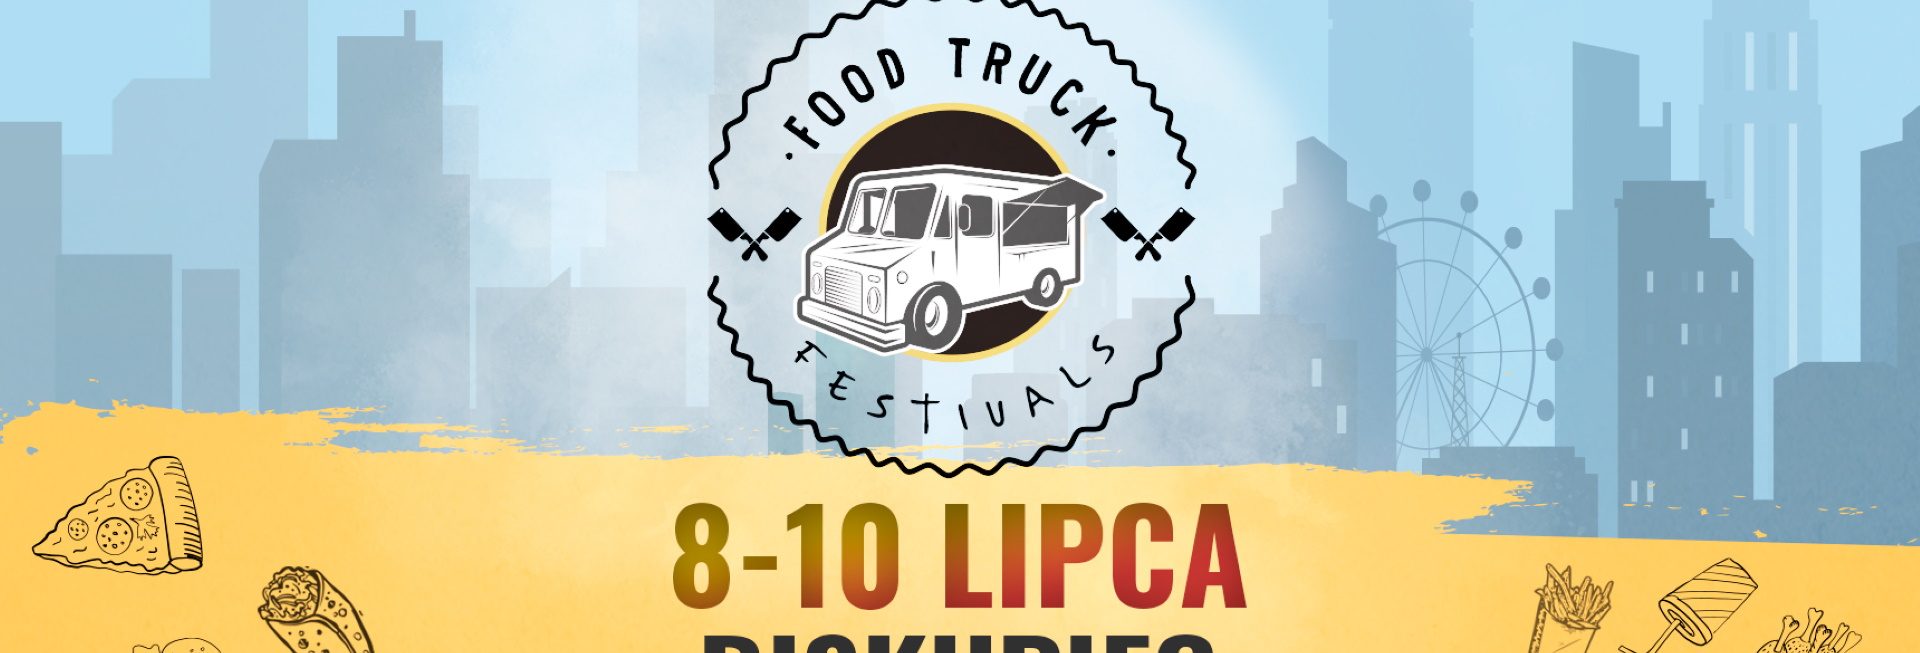 Plakat graficzny zapraszający do Biskupca na Food Truck Festivals – Moc smaków w jednym miejscu Biskupiec 2022.